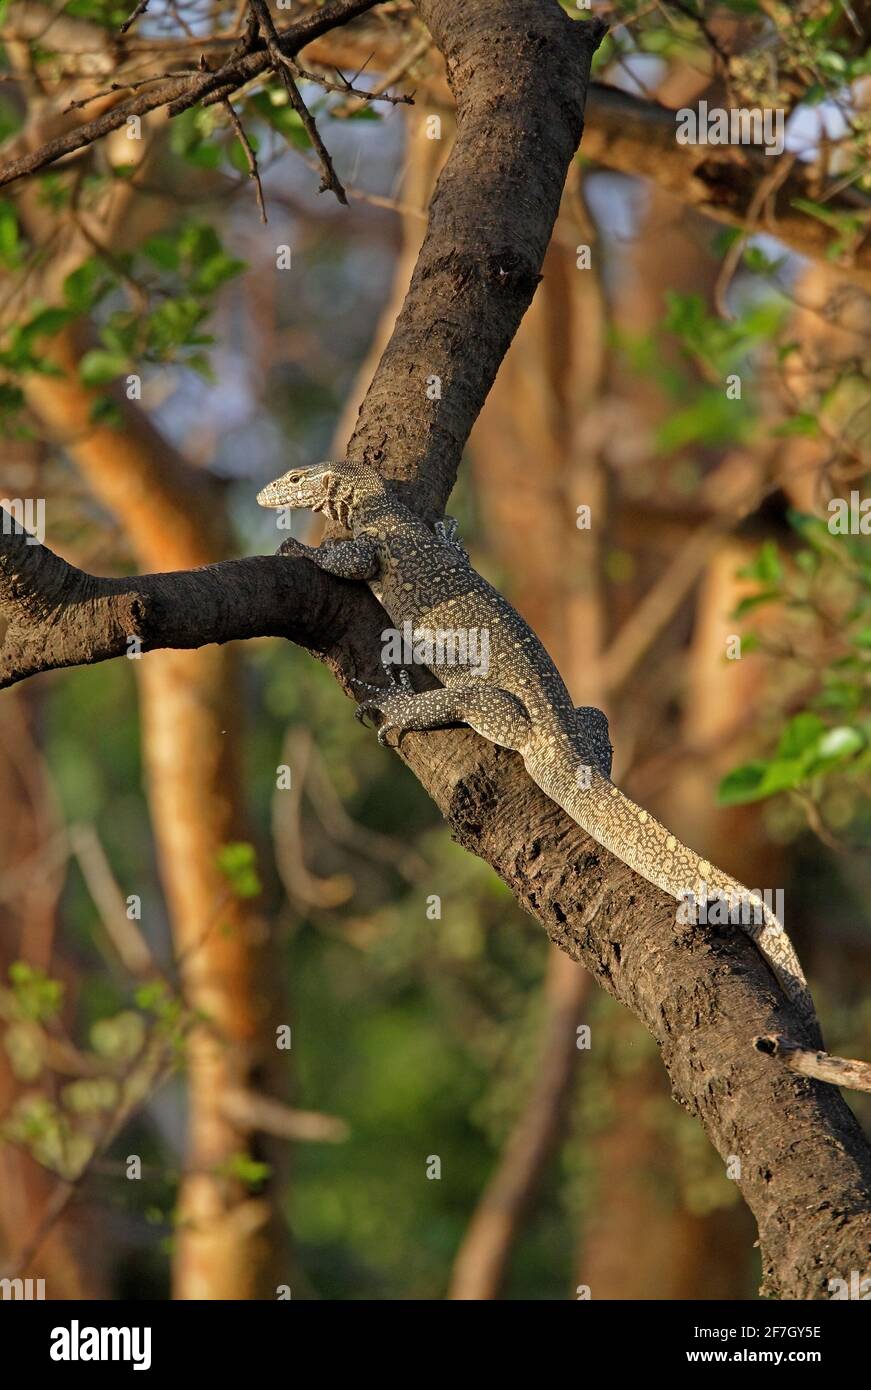 Surveillance du Nil (Varanus niloticus) adulte arbre grimpant nash NP, Ethiopie Avril Banque D'Images